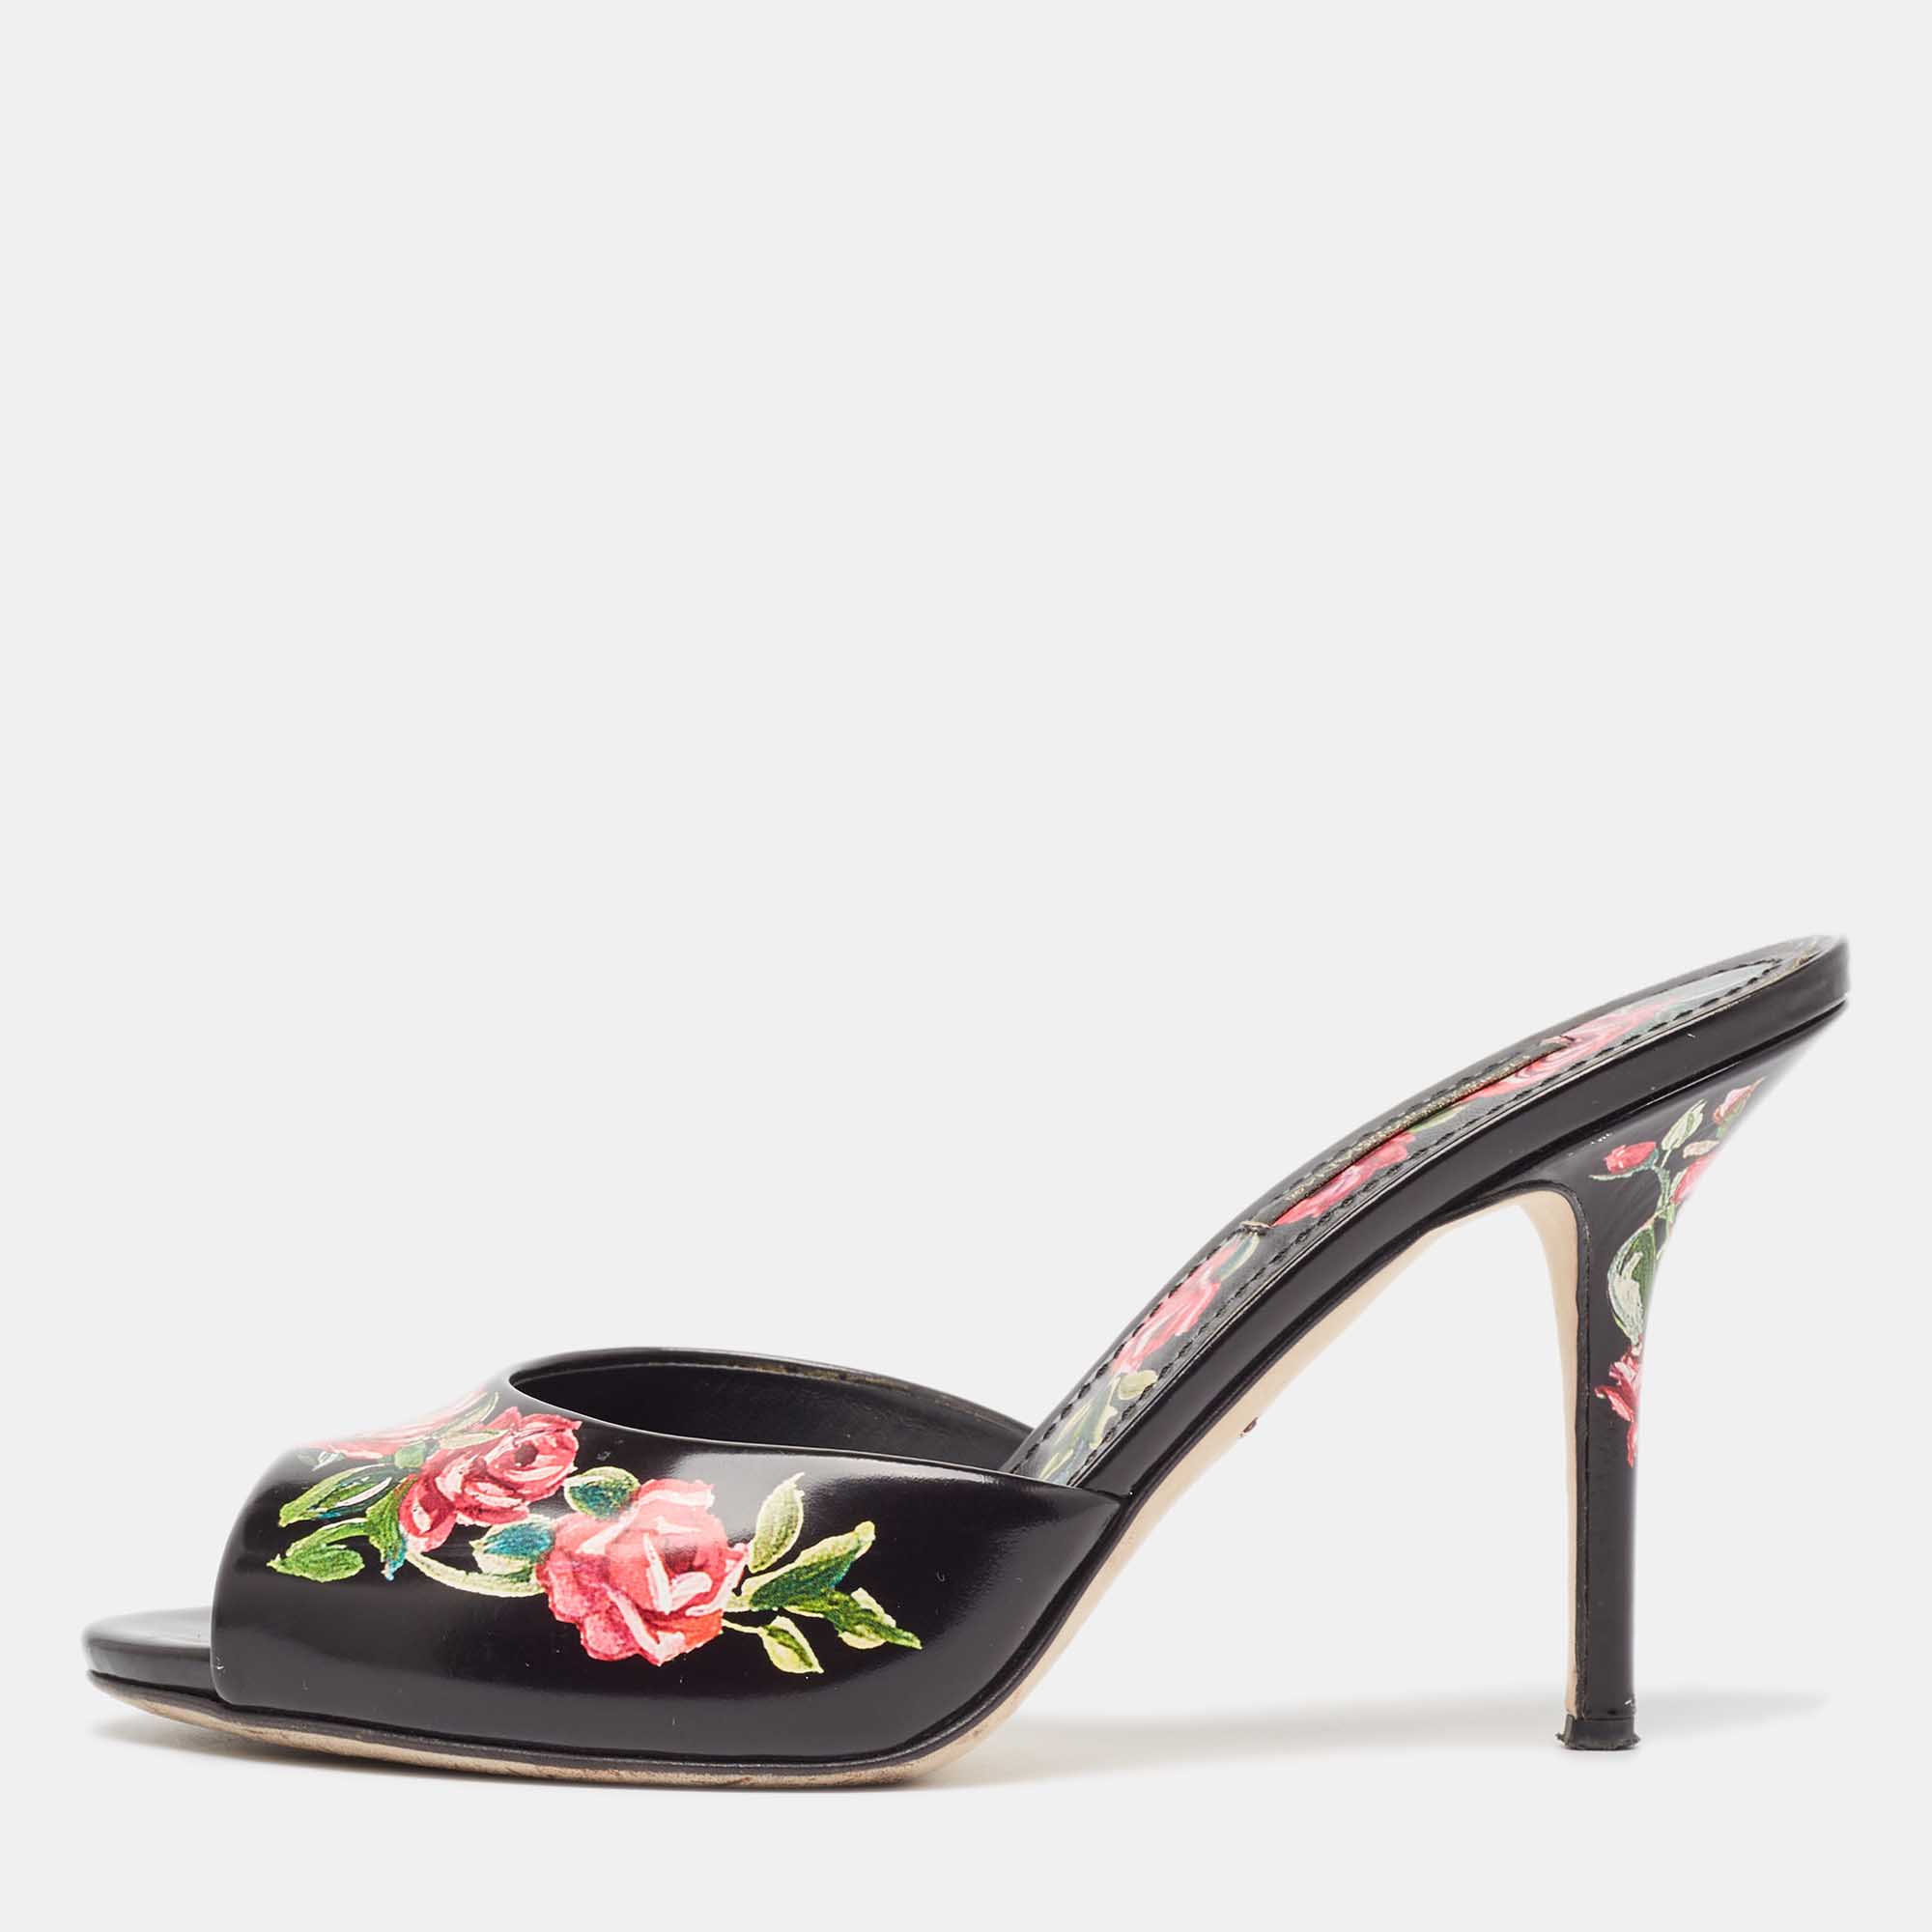 Dolce & gabbana black leather rose print slide sandals size 37